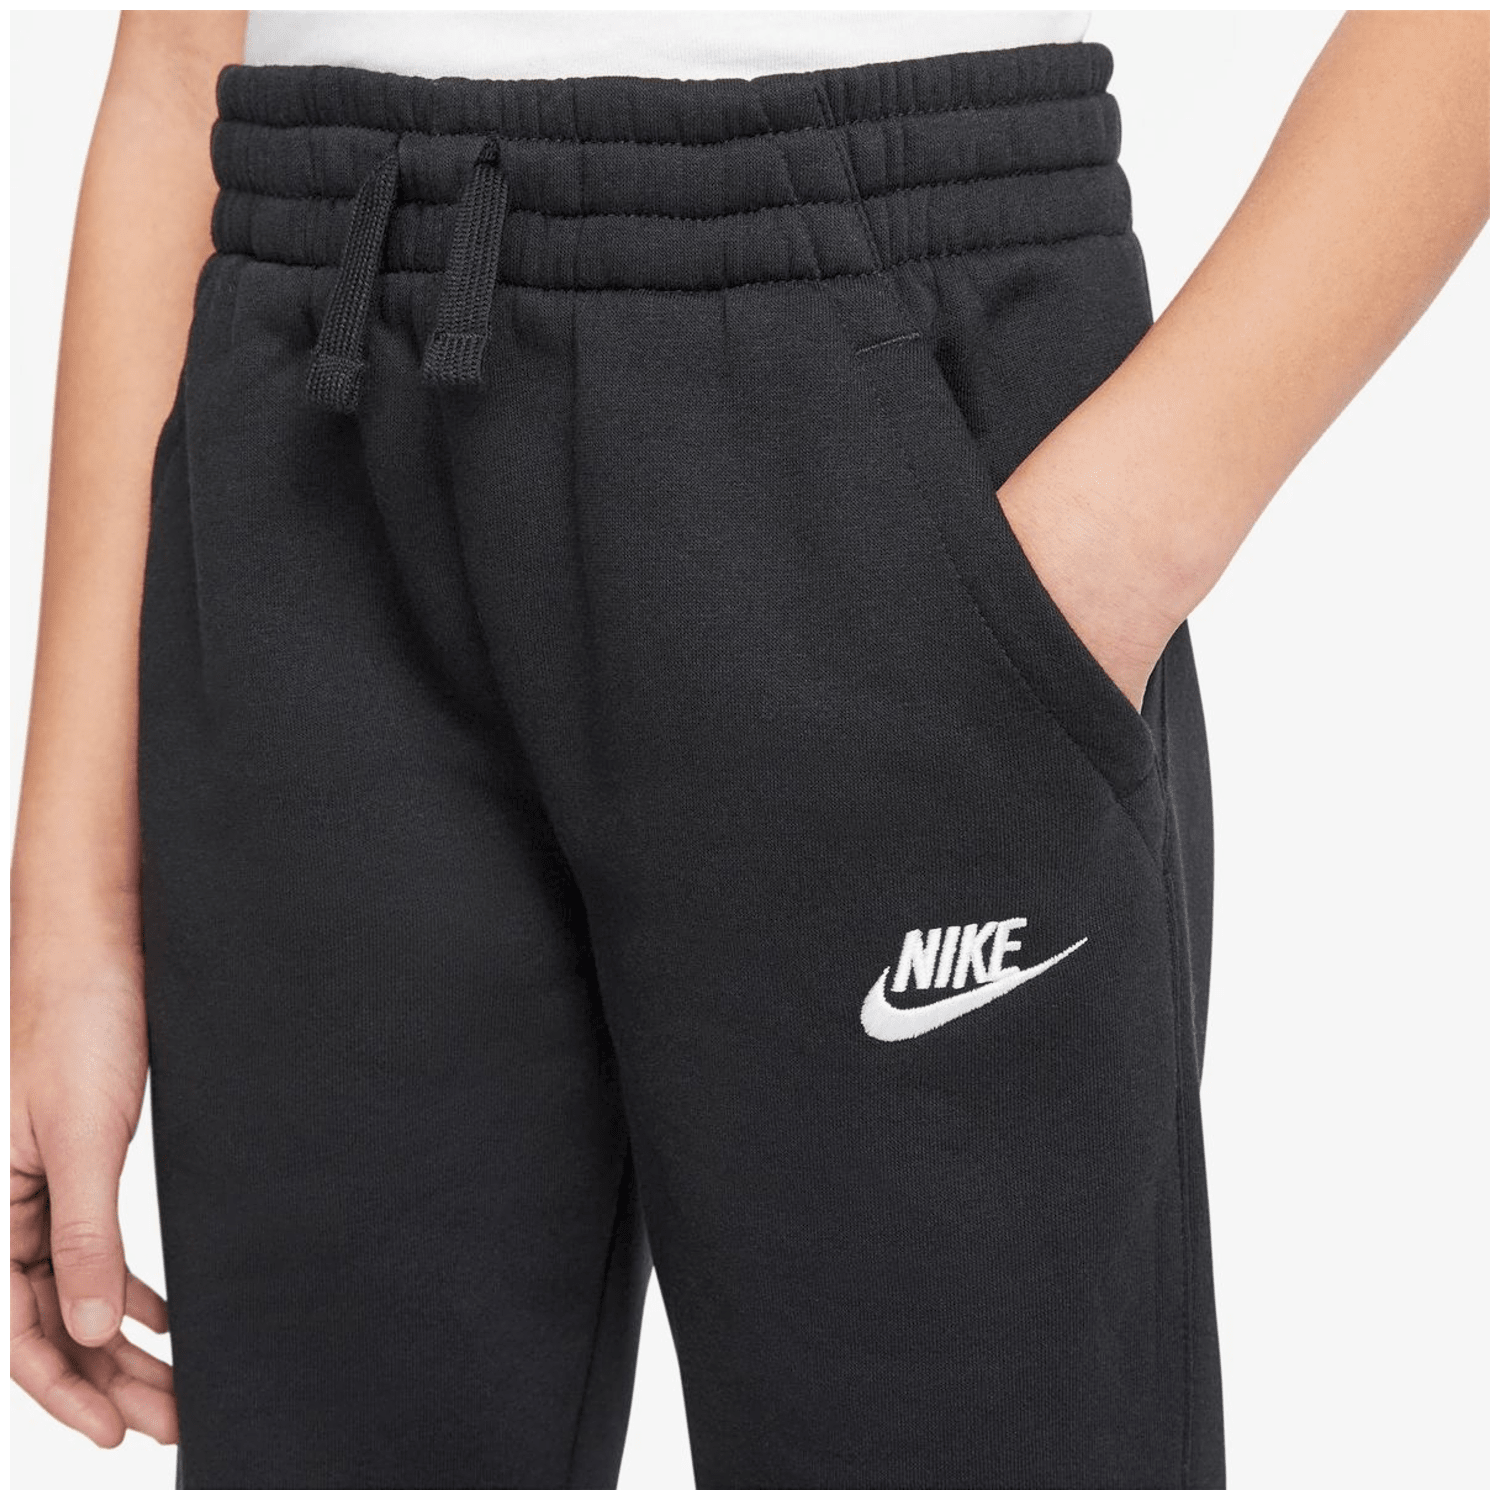 Nike Sportswear Jungen Trainingsanzug